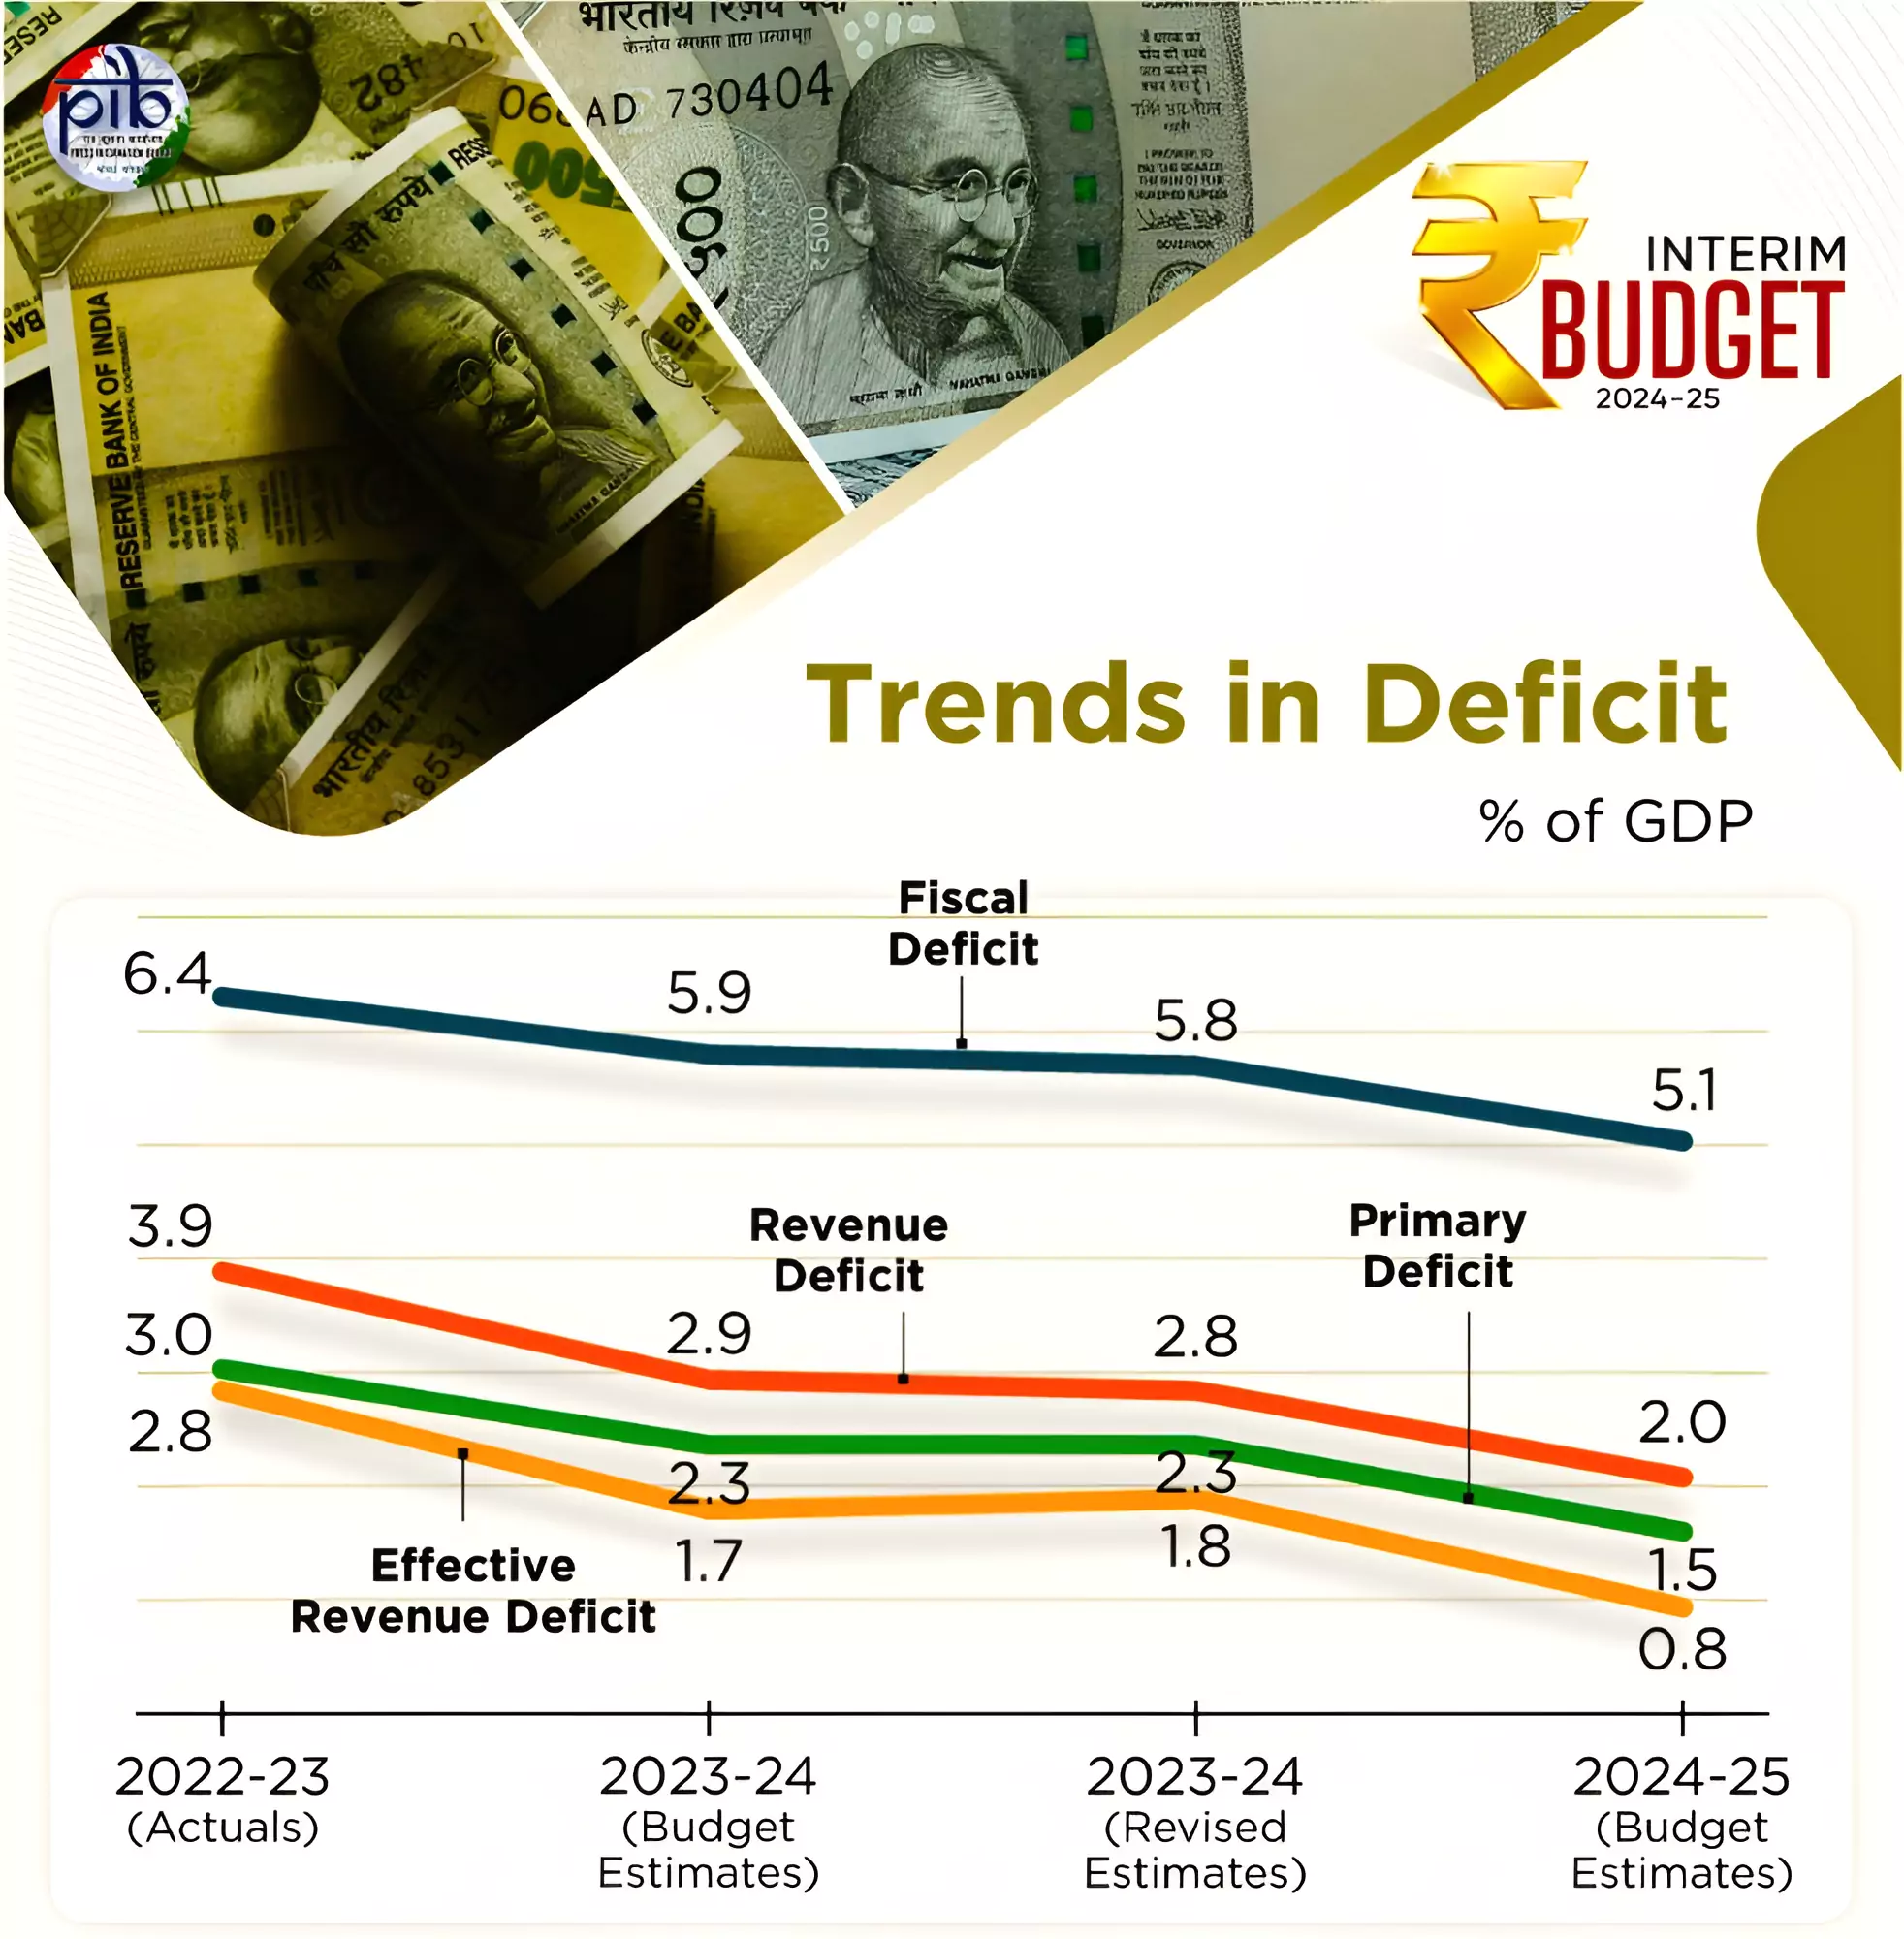 Fiscal Deficit 